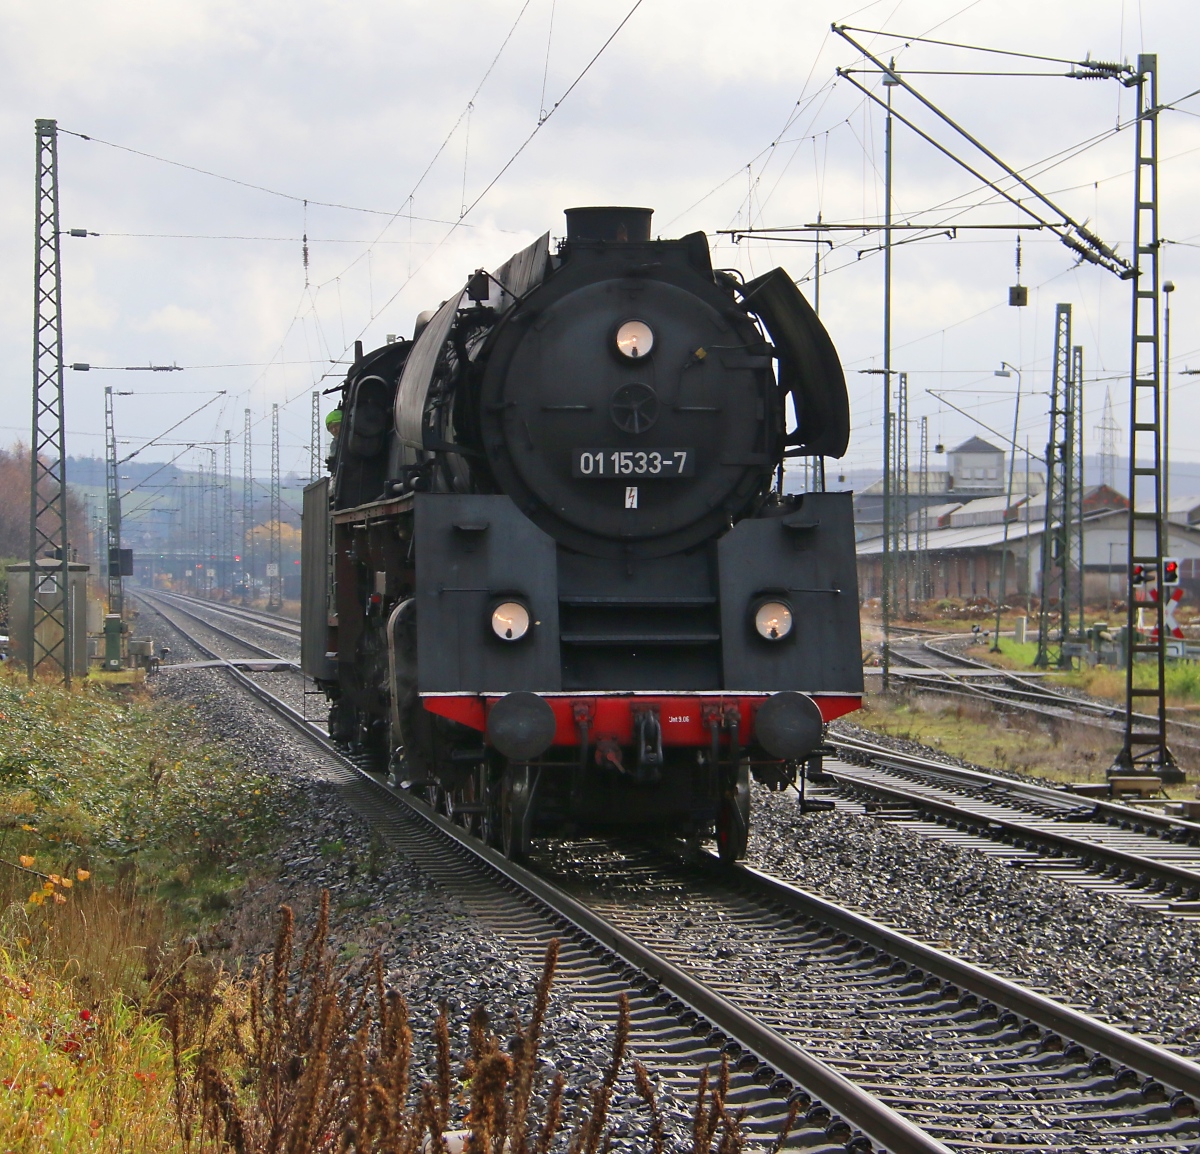 01 1533-7 kam am 14.11.2015 aus Richtung Bebra durch Lispenhausen weiter nach Kassel.